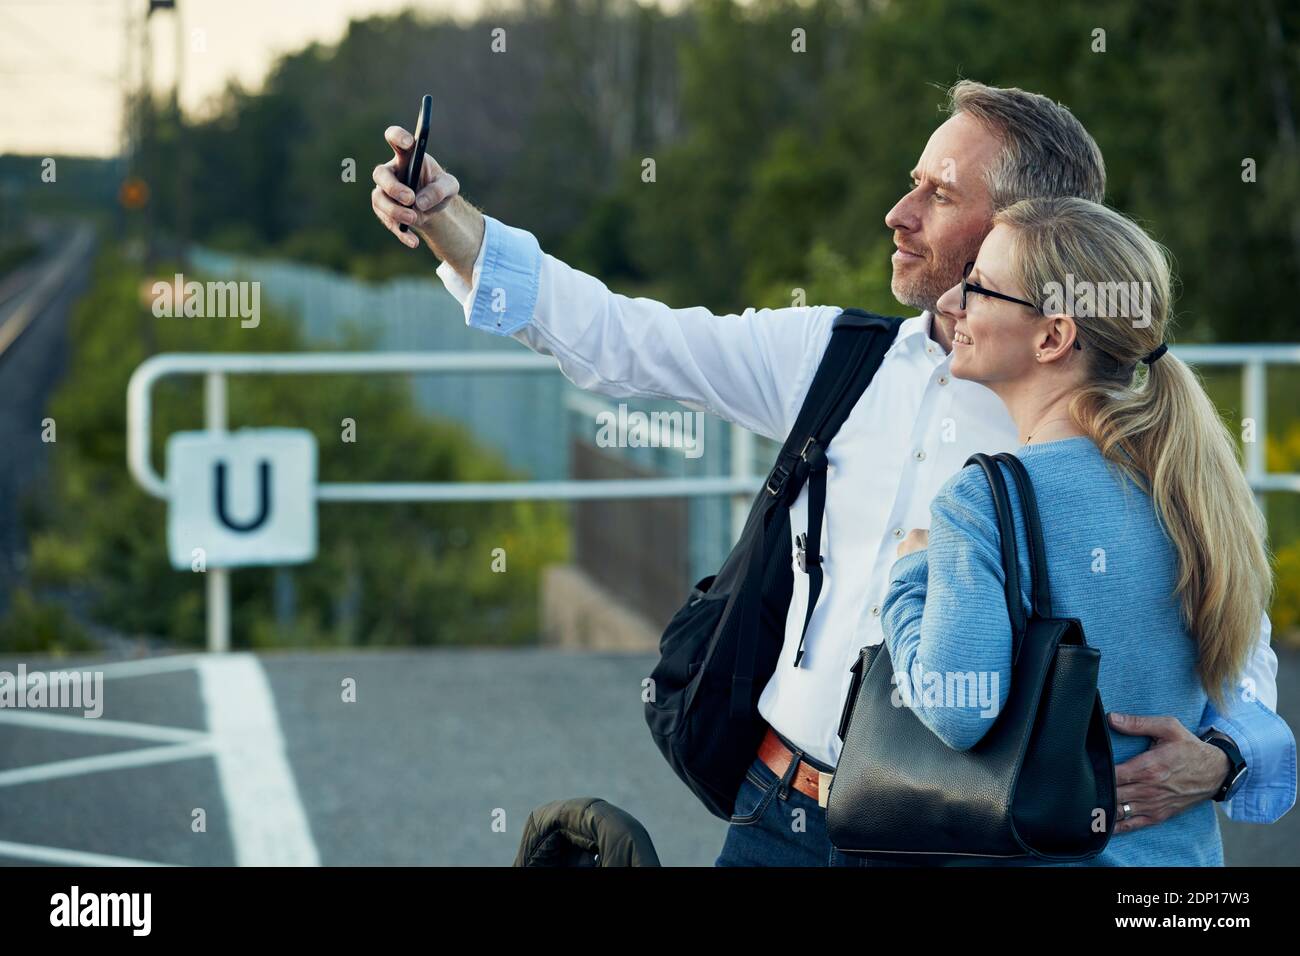 Ein Paar, das Selfie am Bahnhofsplatz gemacht hat Stockfoto